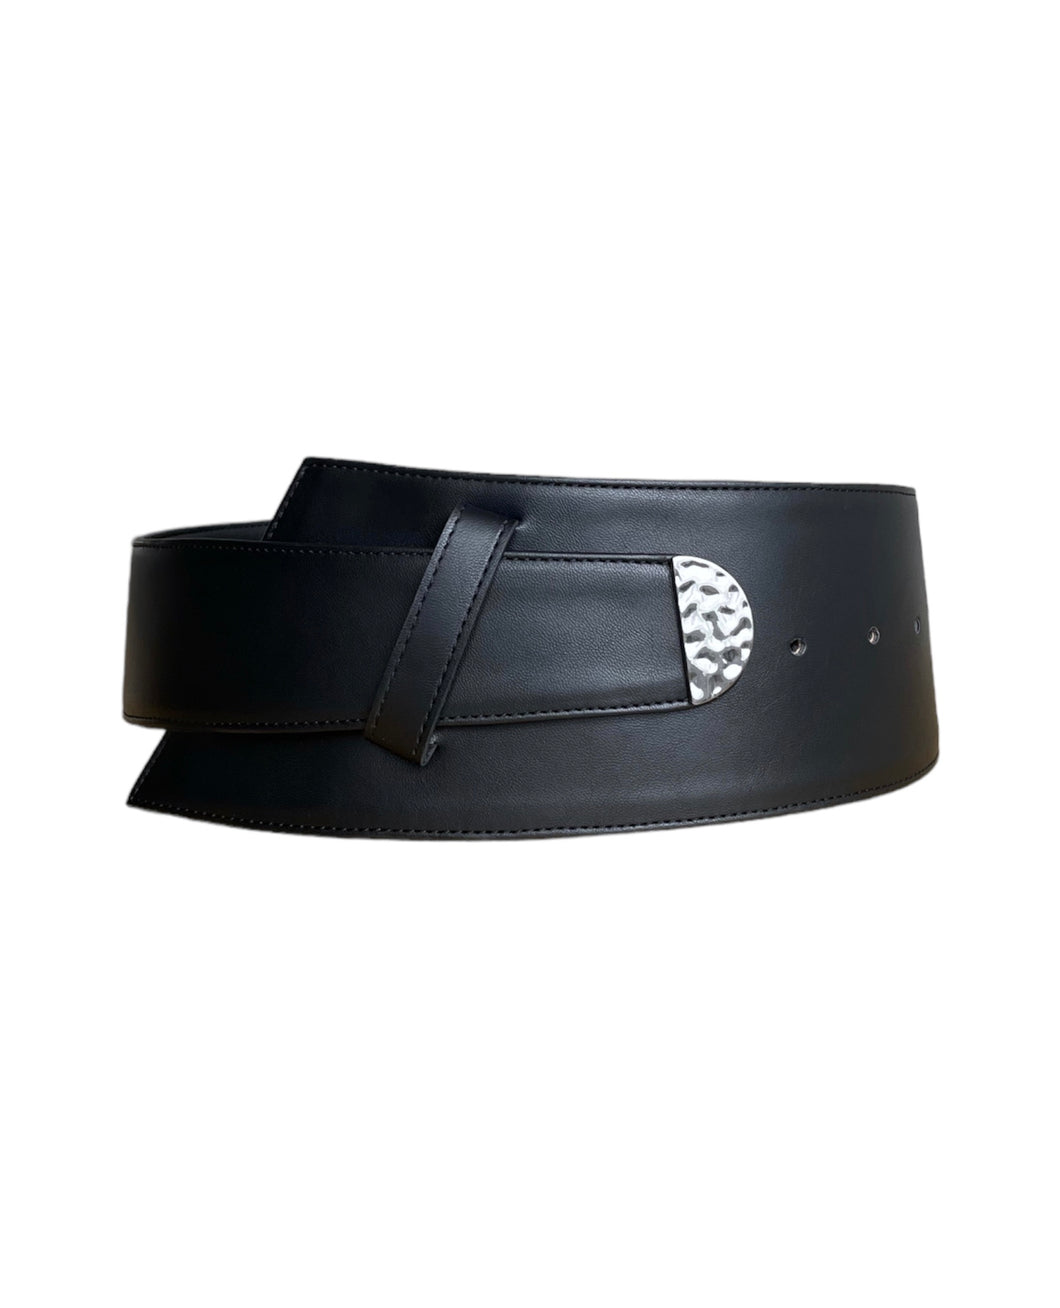 Asymmetrical Wide Black Leather Belt